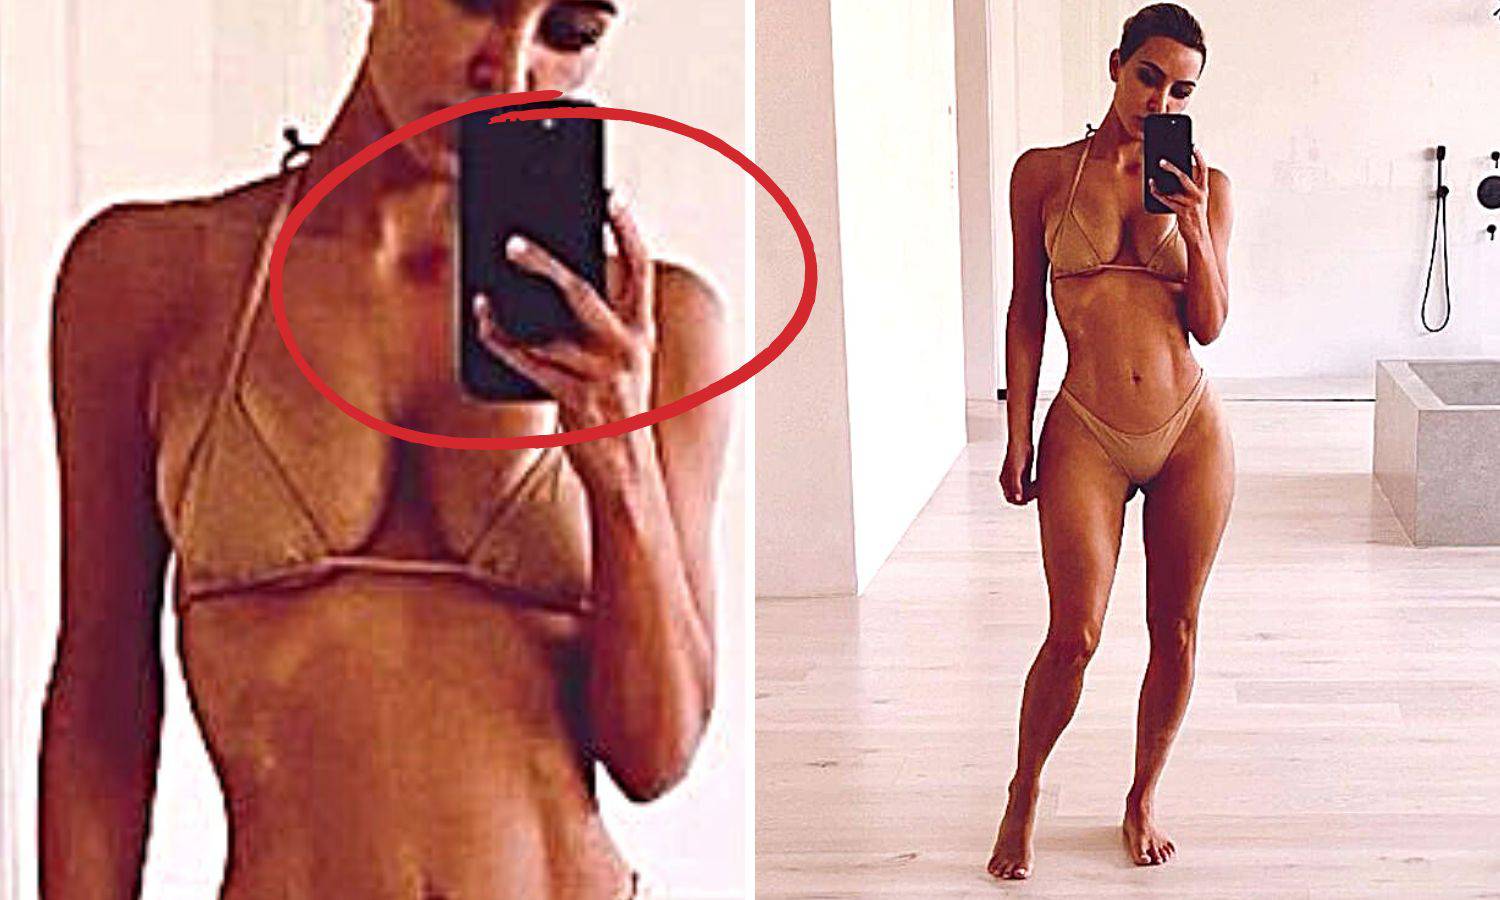 Kim Kardashian objavila vruću fotku u badiću, fanovi u šoku: Gdje ti je srednji prst, ženo?!